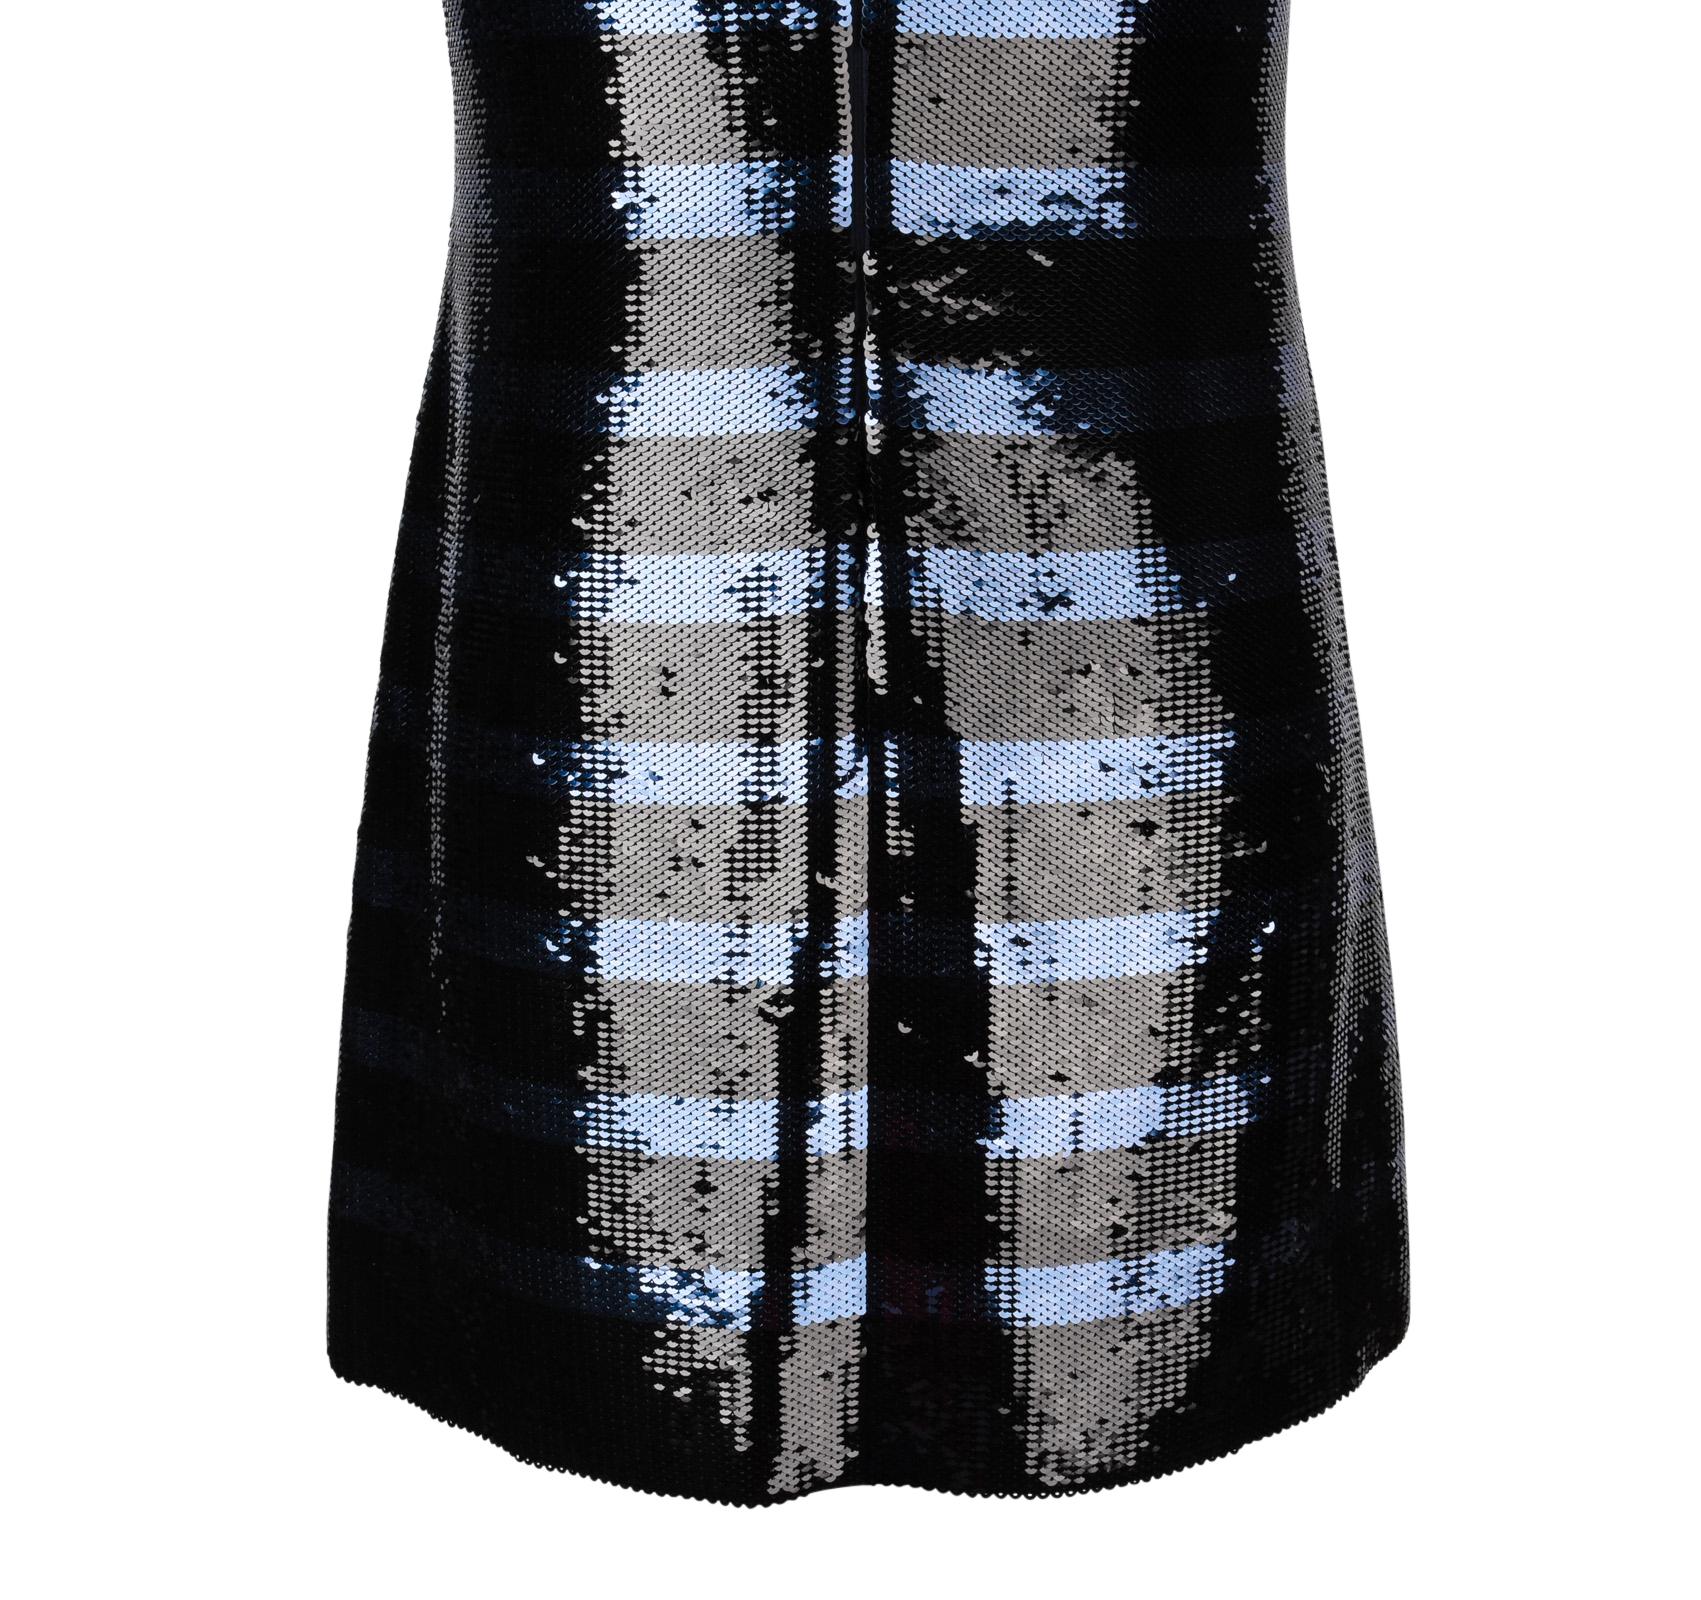 Christian Dior Dress Striped Sequin Embellished Navy / Black 6 9